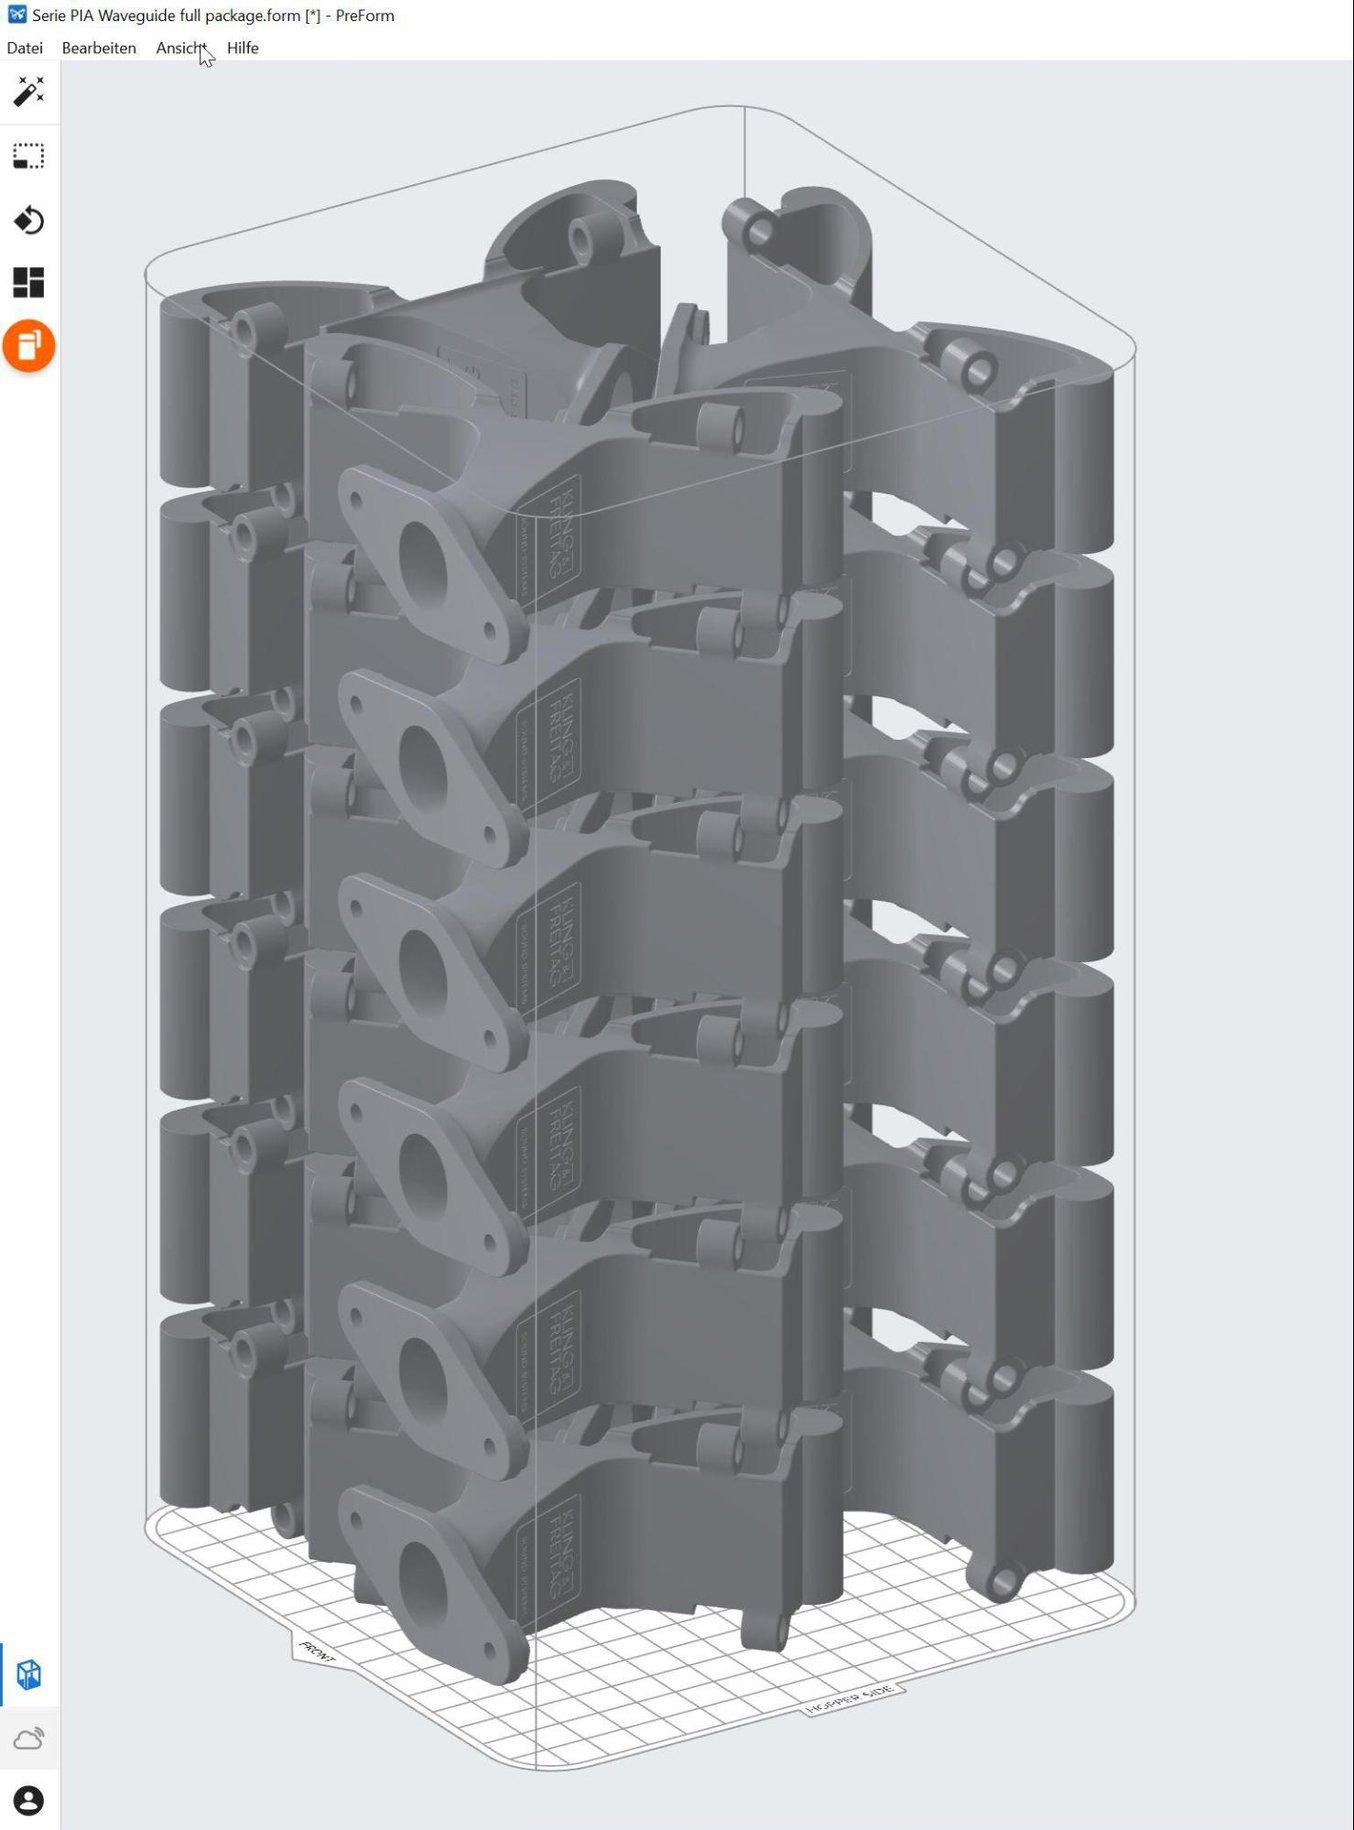 Chambre de fabrication entièrement remplie de l'imprimante 3D SLS Fuse 1, vue dans le logiciel PreForm.